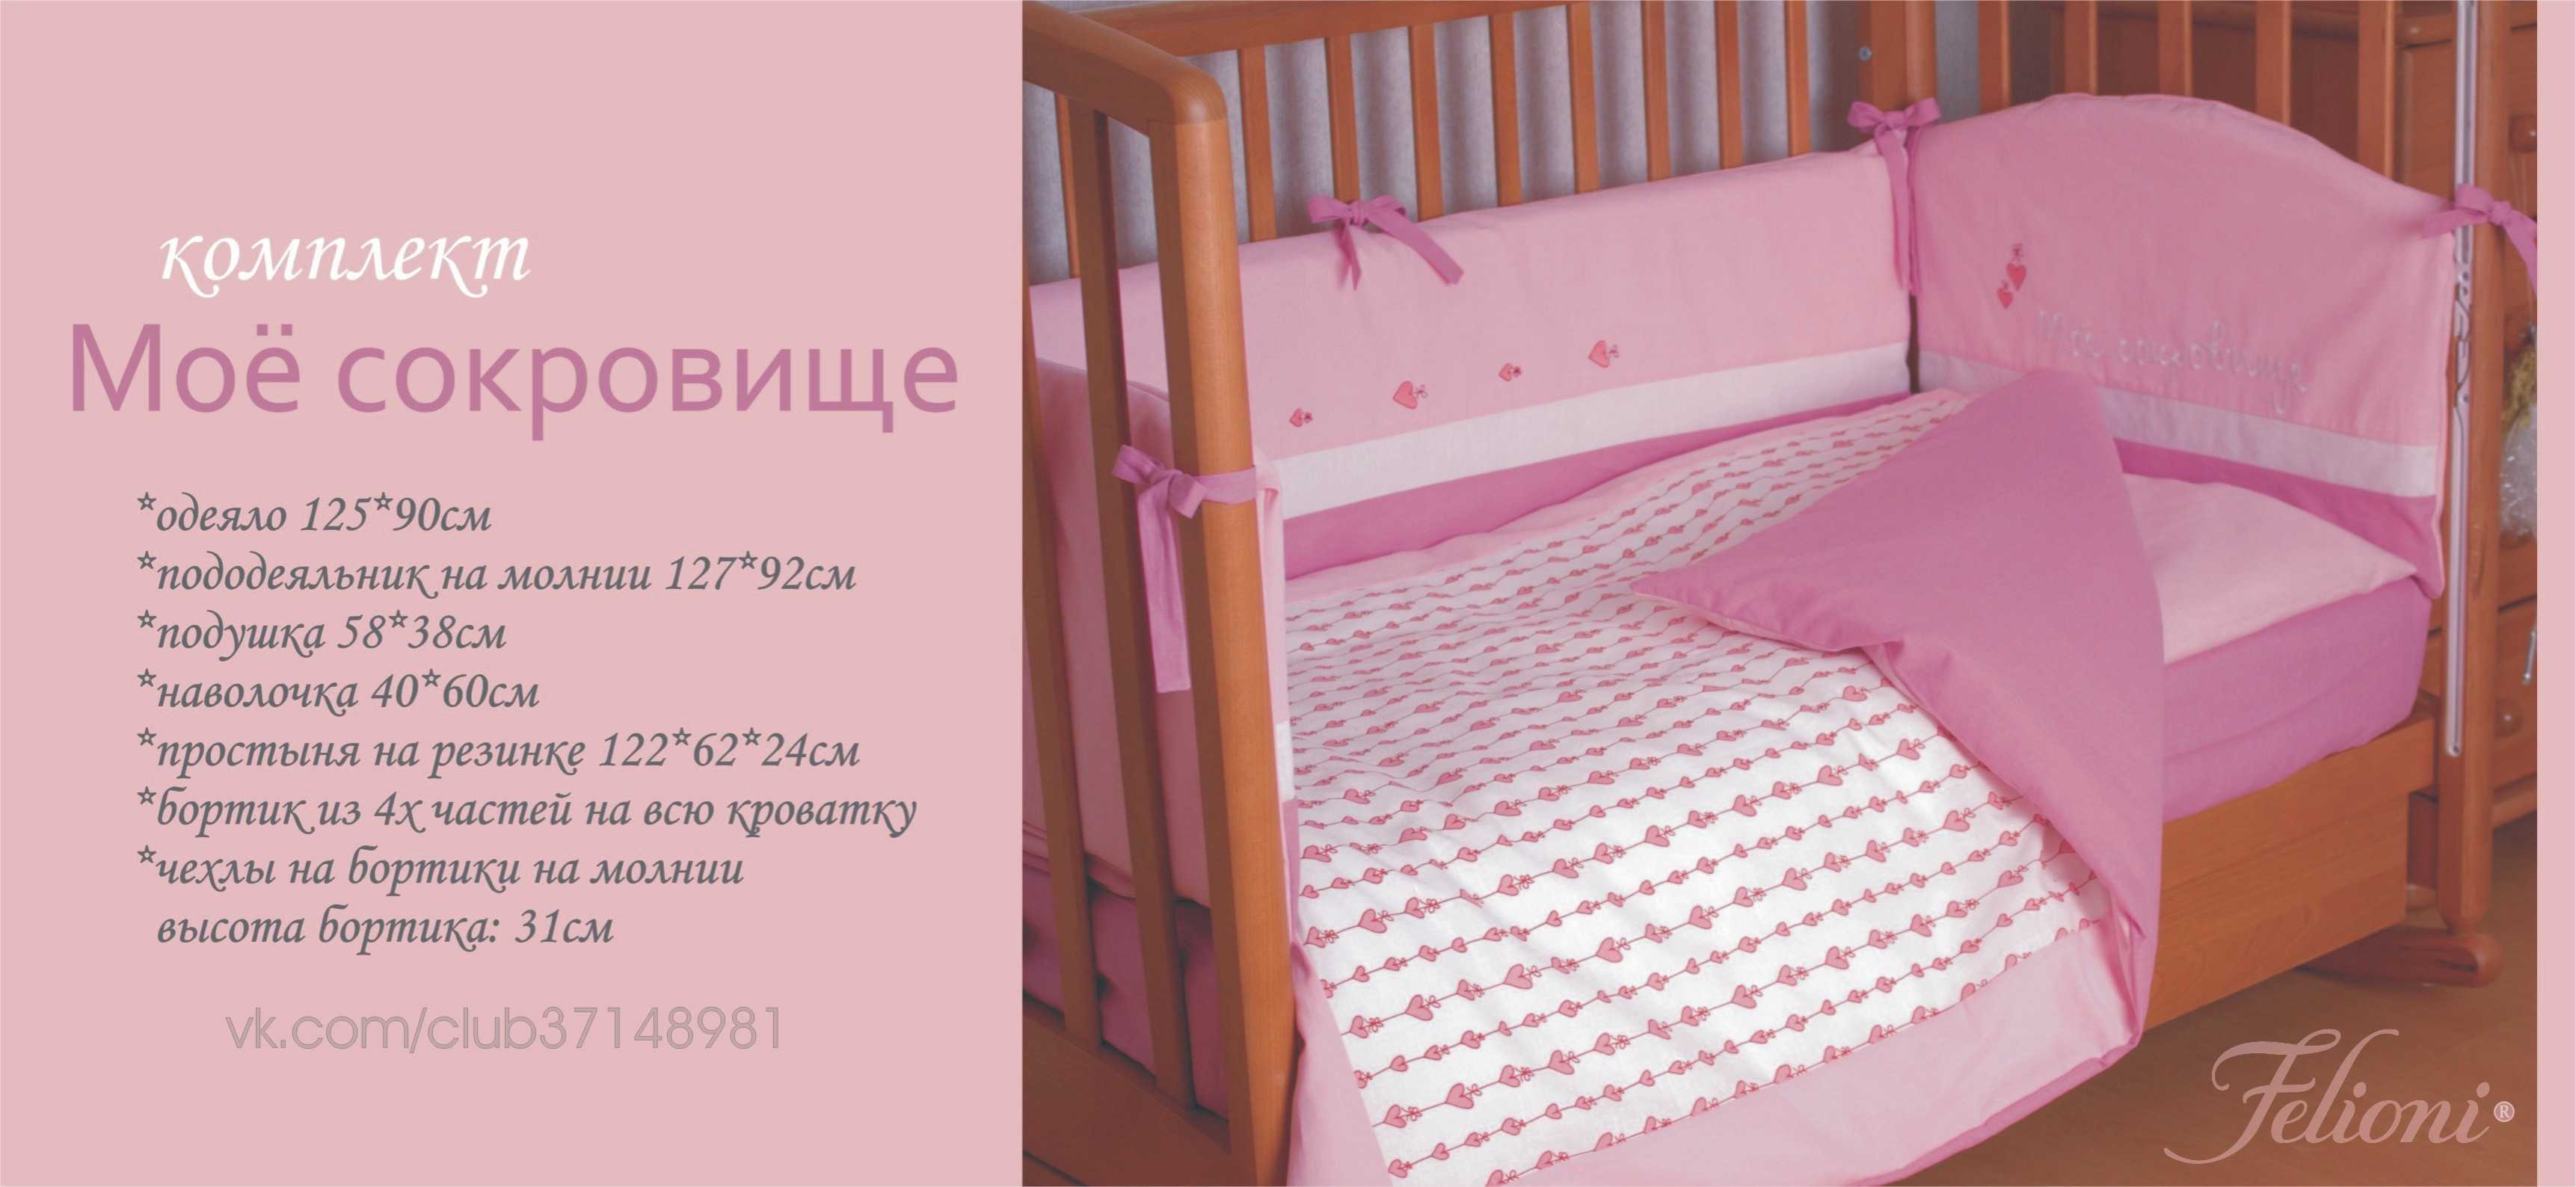 Постельное белье для новорожденных в кроватку: советы по выбору, материалы, размеры